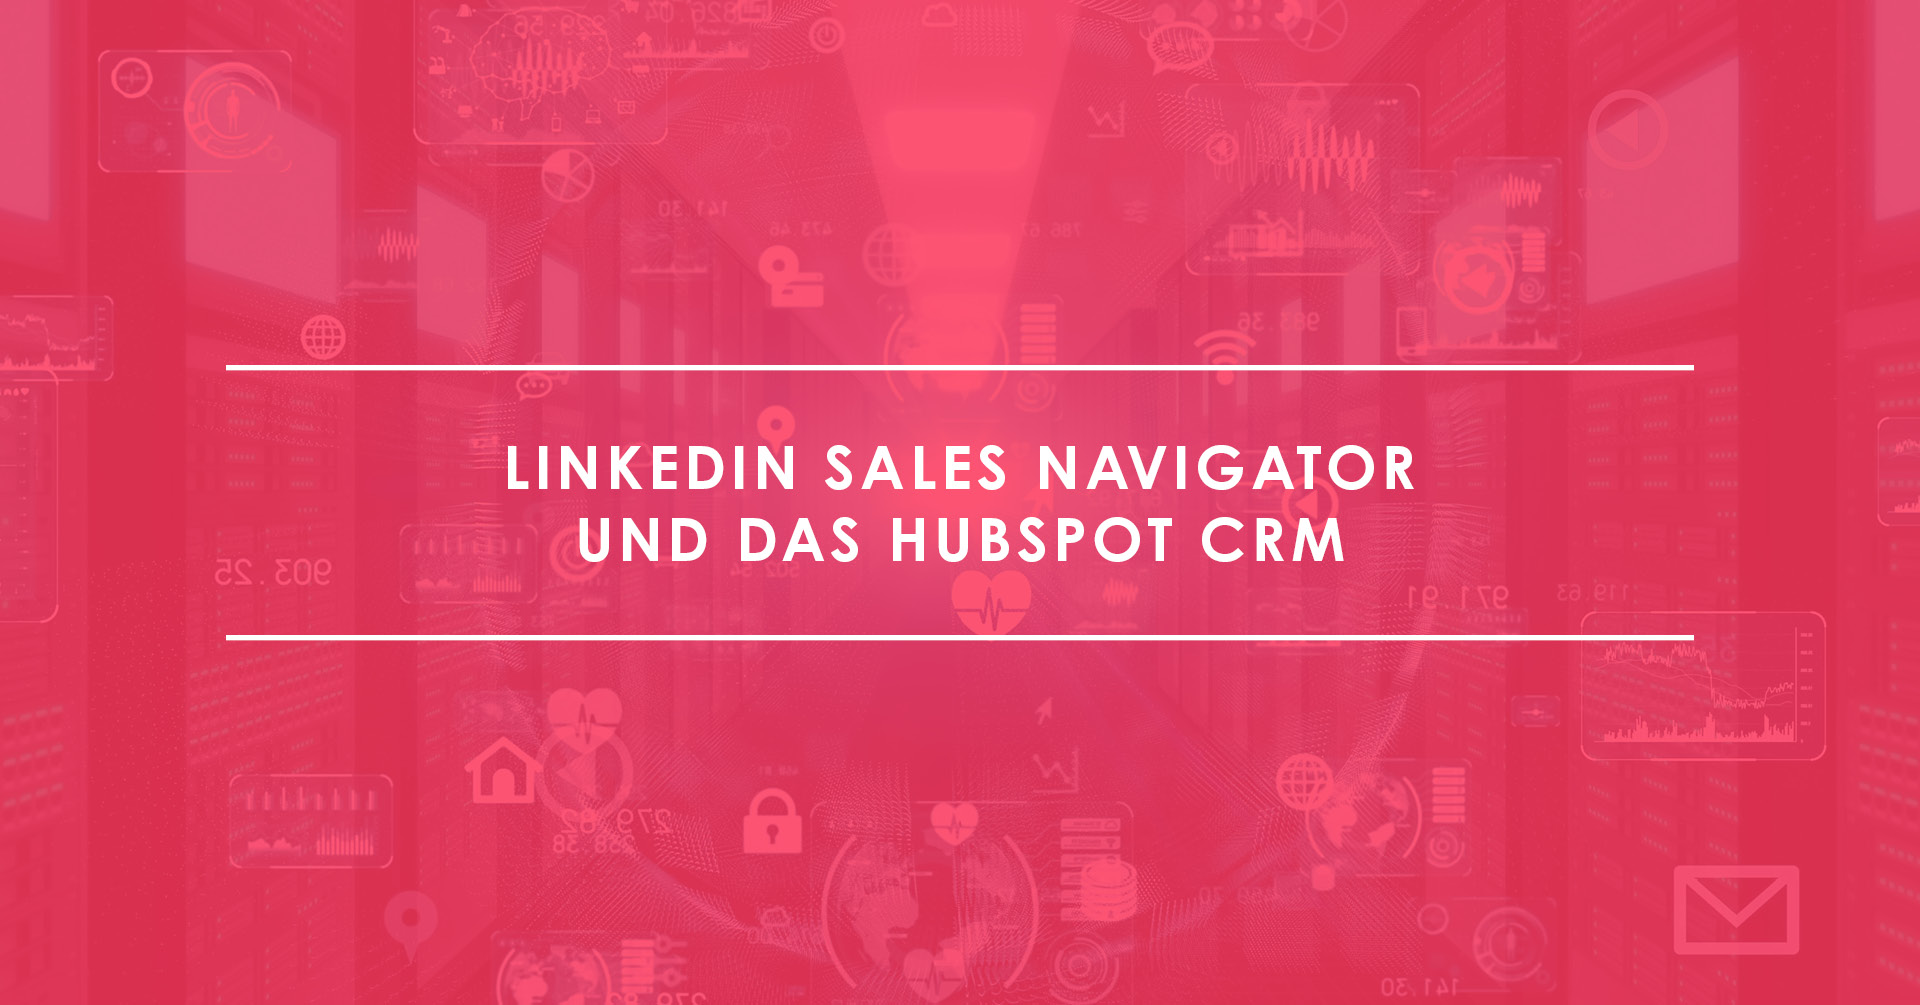 LinkedIn Sales Navigator und das CRM: Das Duo für Social Selling mit Erfolg